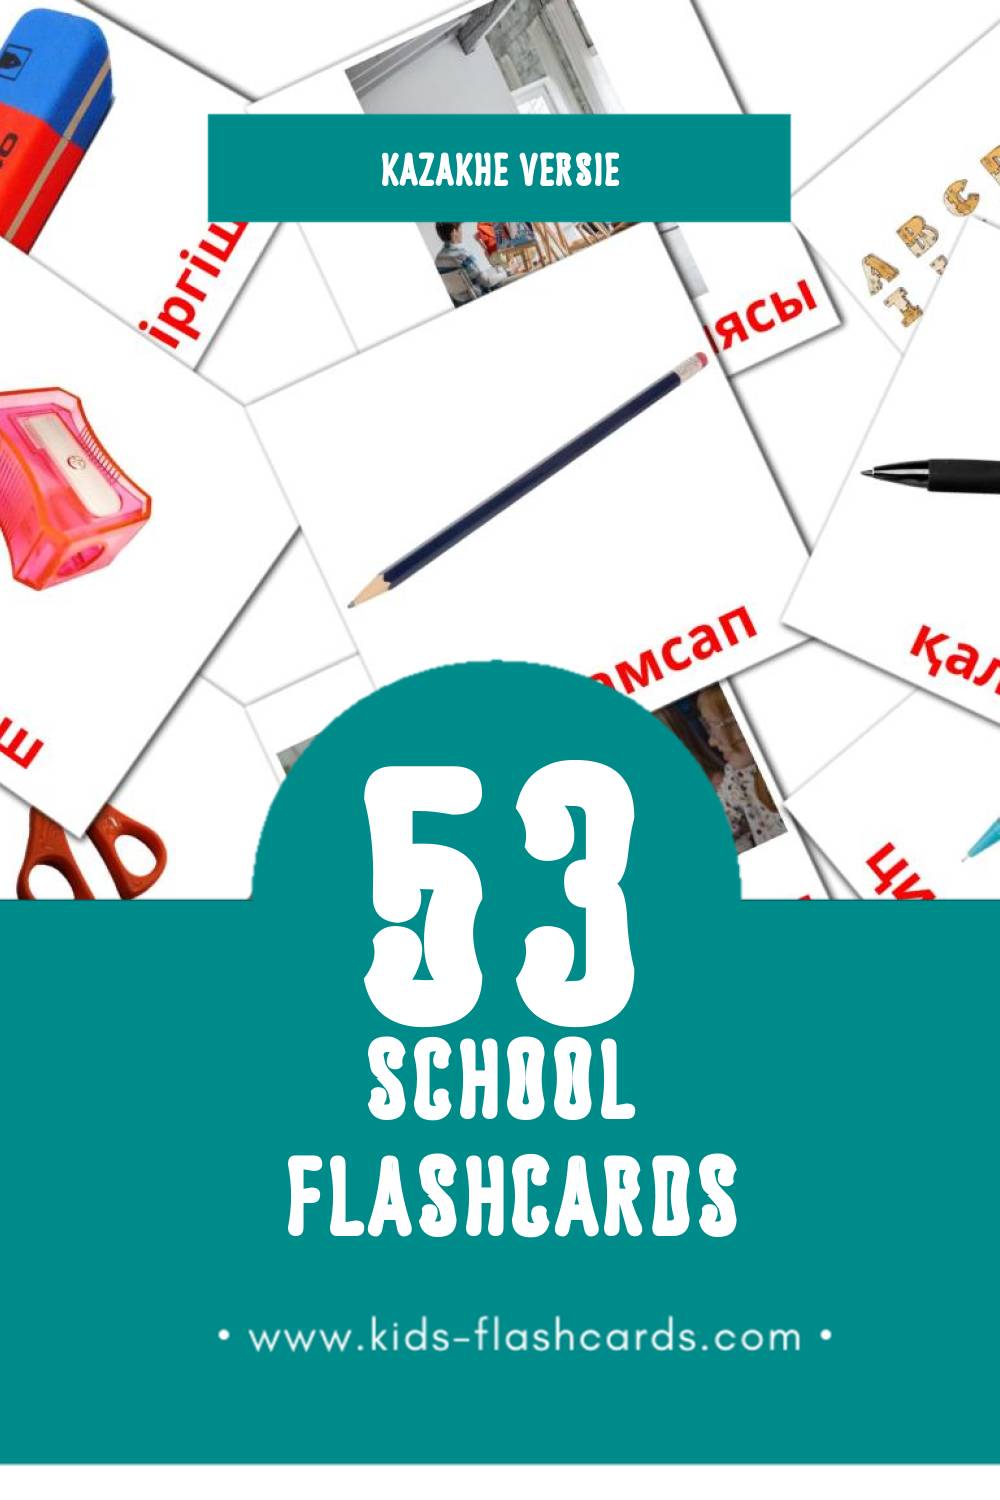 Visuele Мектеп Flashcards voor Kleuters (53 kaarten in het Kazakh)